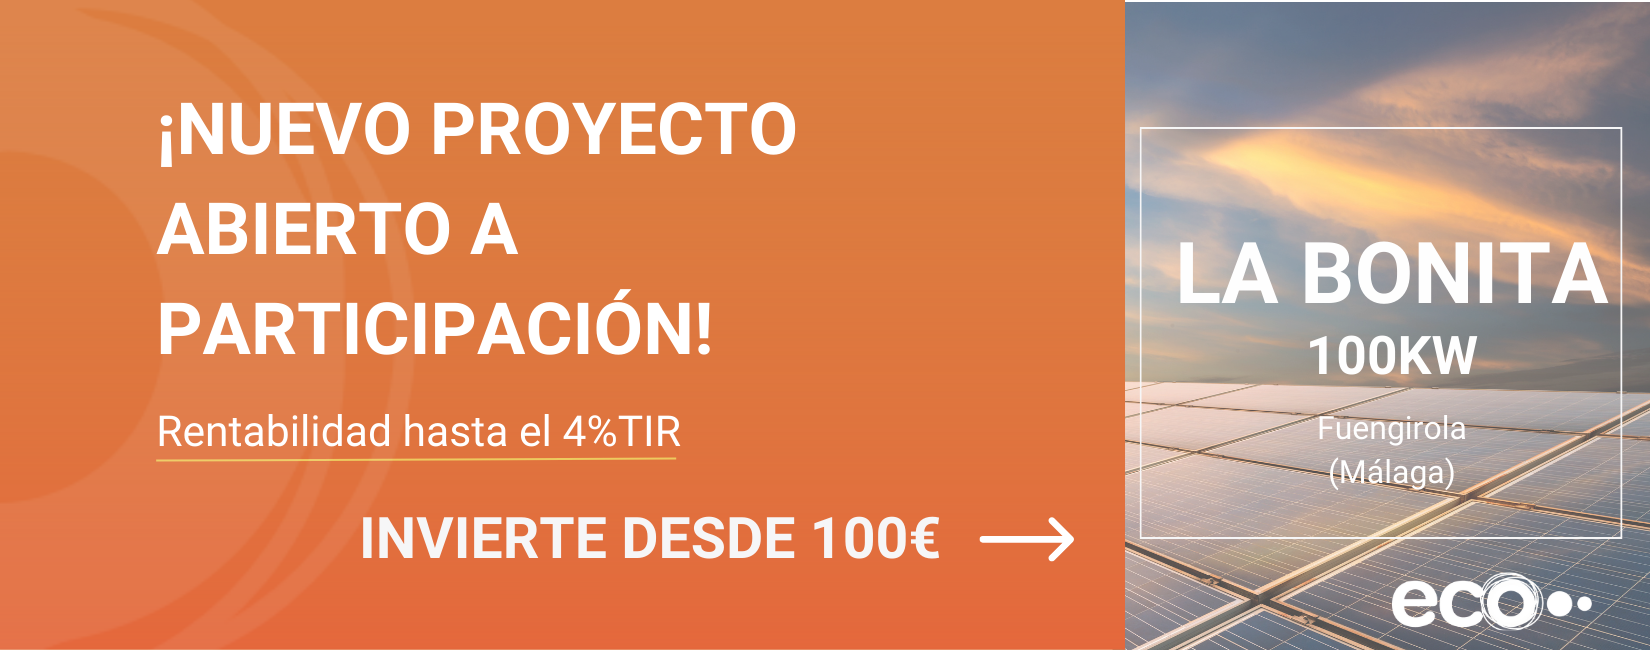 invierte en La Bonita proyecto en Fuengirola